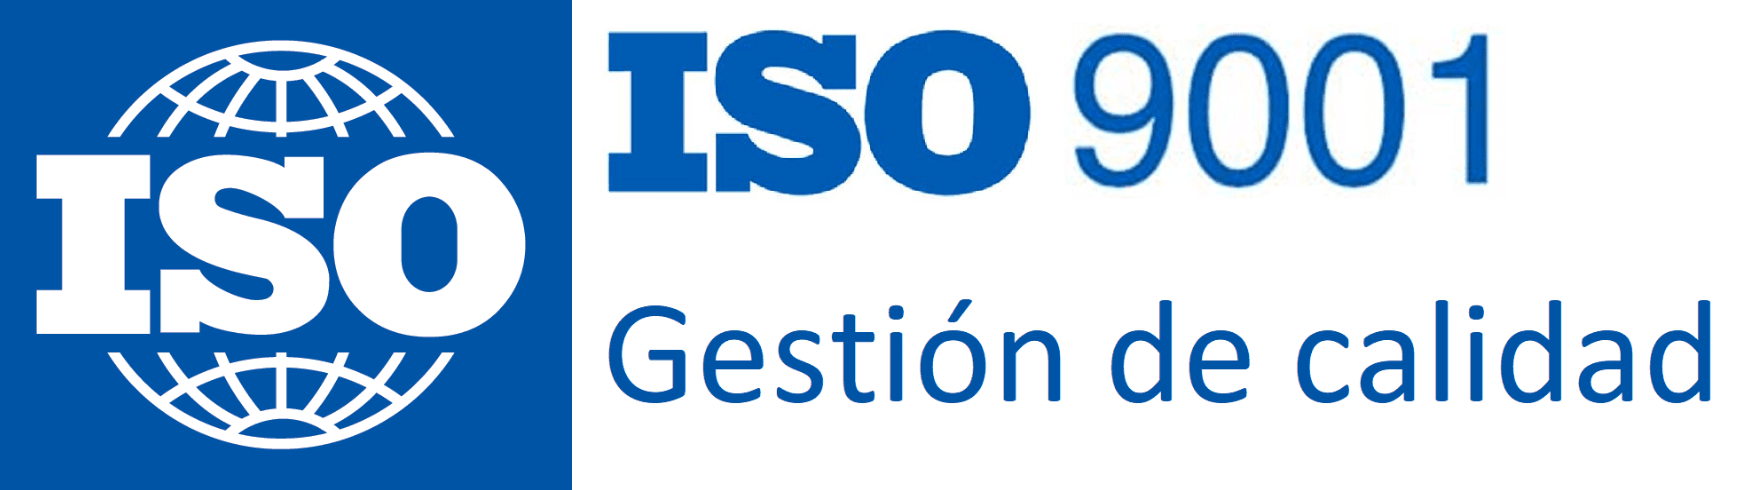 Coljuegos obtiene la certificación ISO 9001